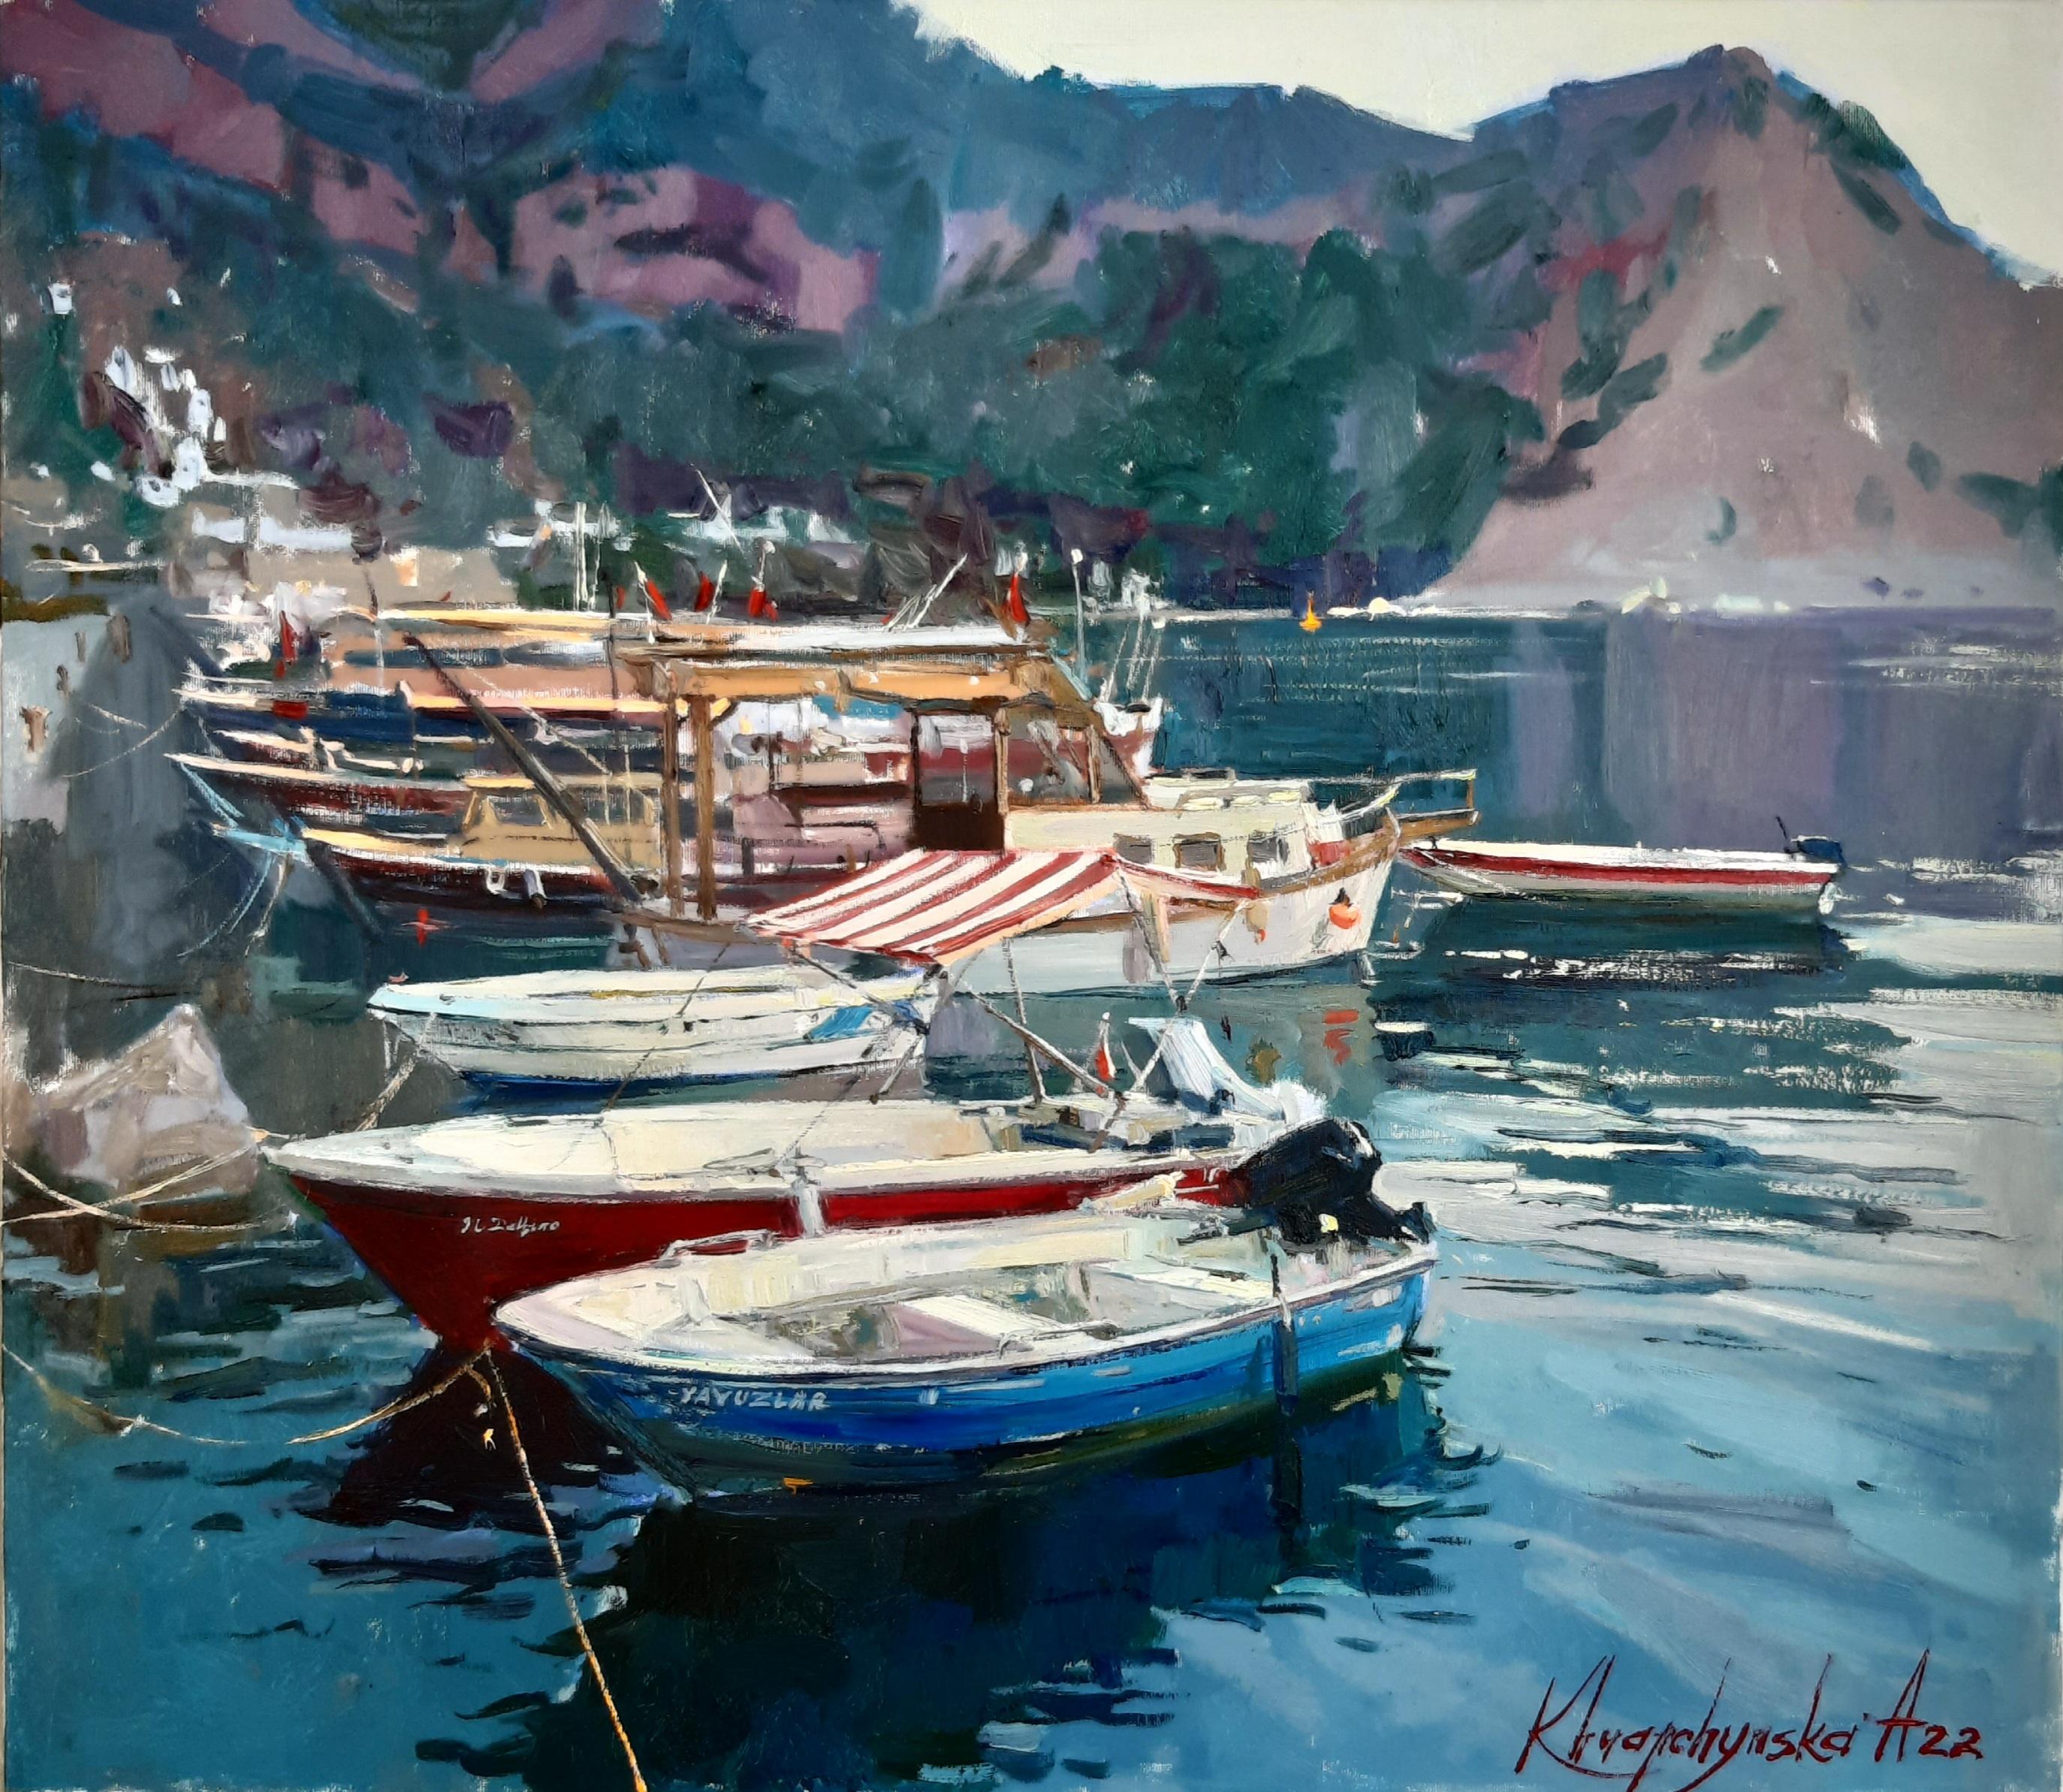 Alina Khrapchynska Landscape Painting – Wharf – maritime Landschaft, Gemälde in Farben Blau, Grün, Weiß, Braun und Grau